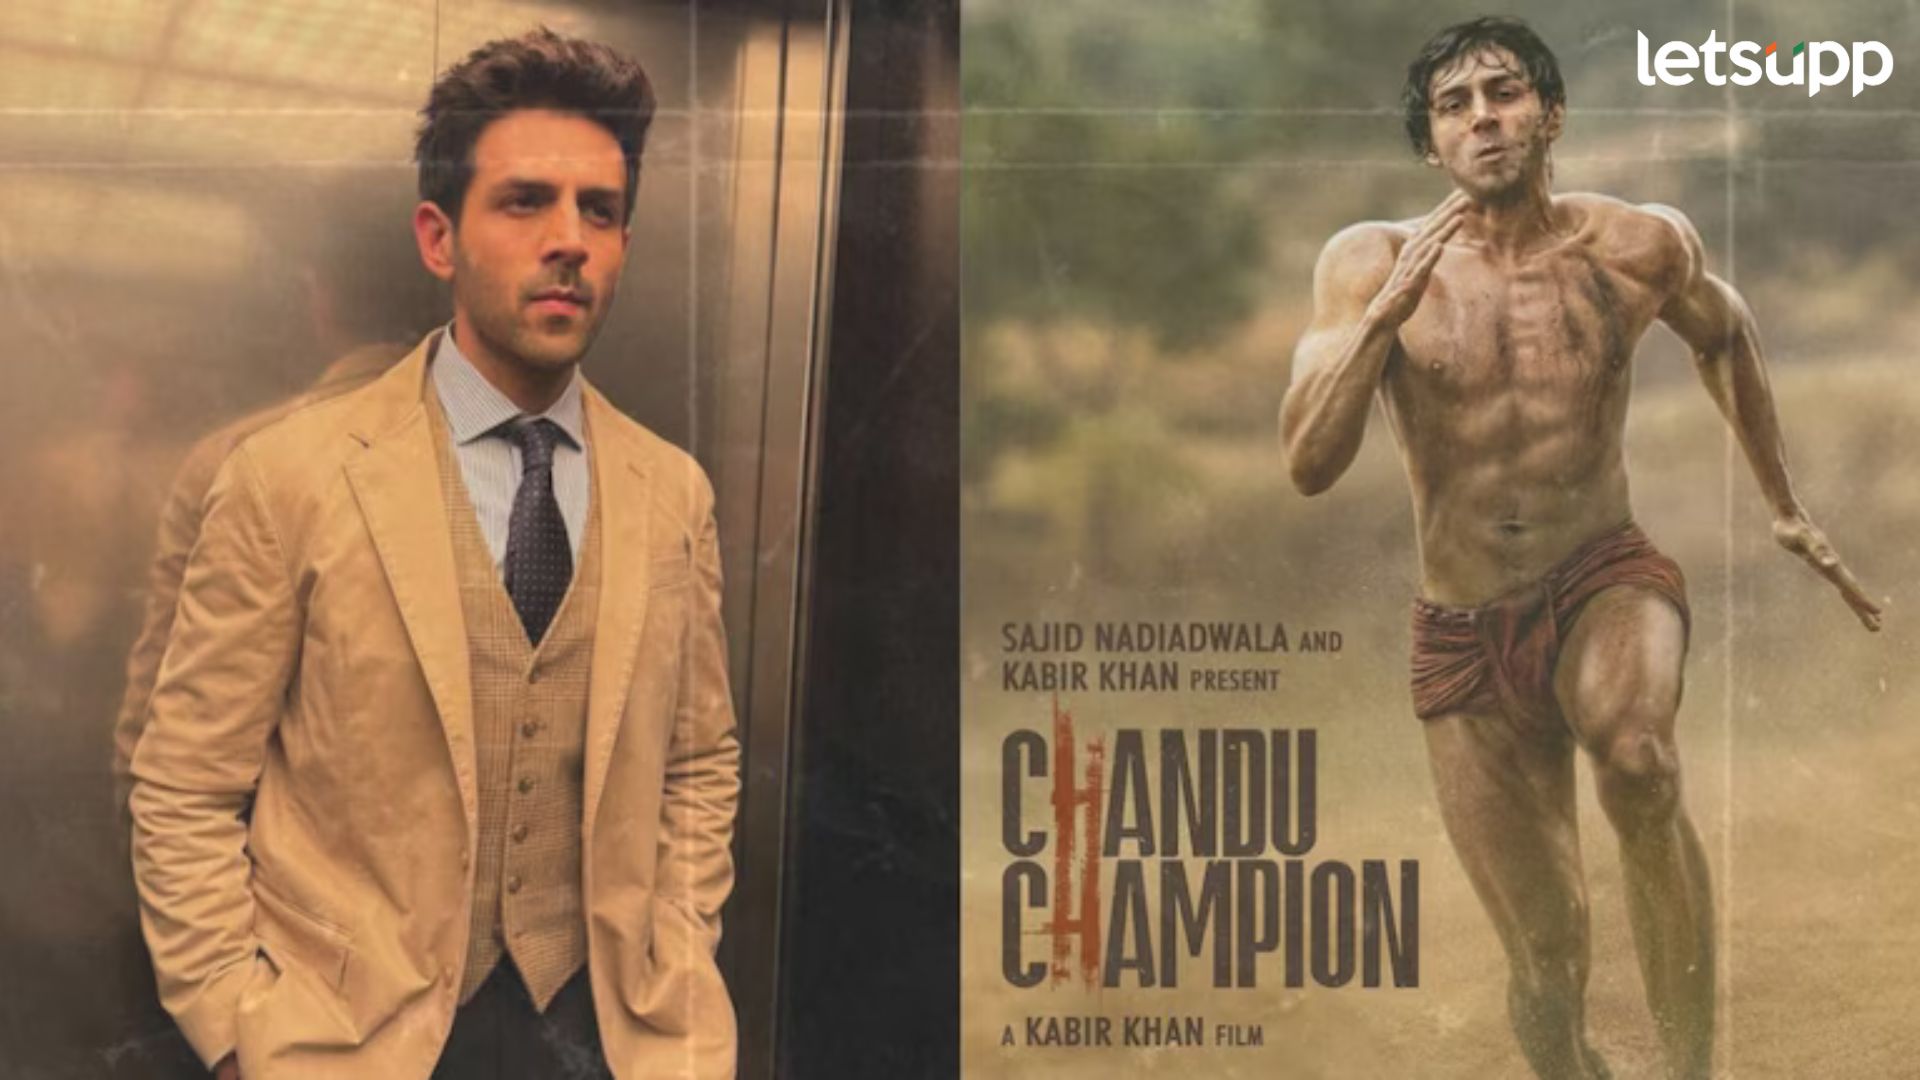 ‘Chandu Champion’ चा मोठा धमाका, रिलीजच्या अगोदरच कार्तिकच्या चित्रपटाने कमावले तब्बल इतके कोटी